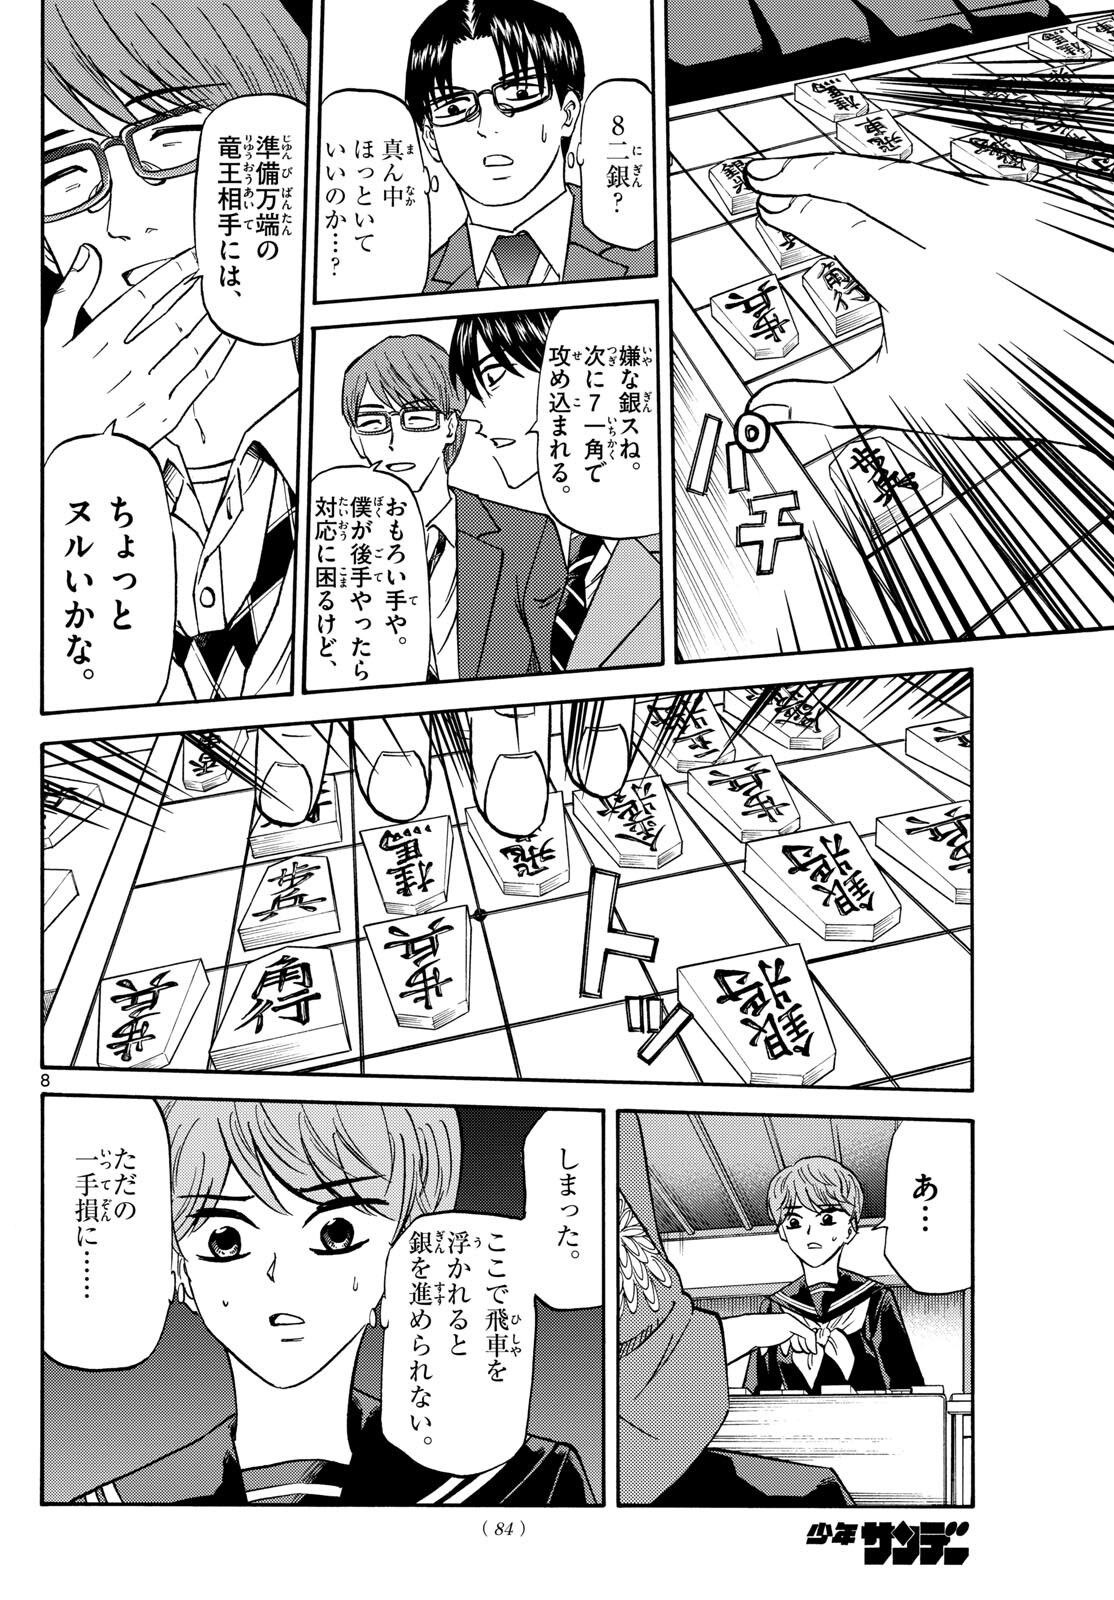 Tatsu to Ichigo - Chapter 176 - Page 8